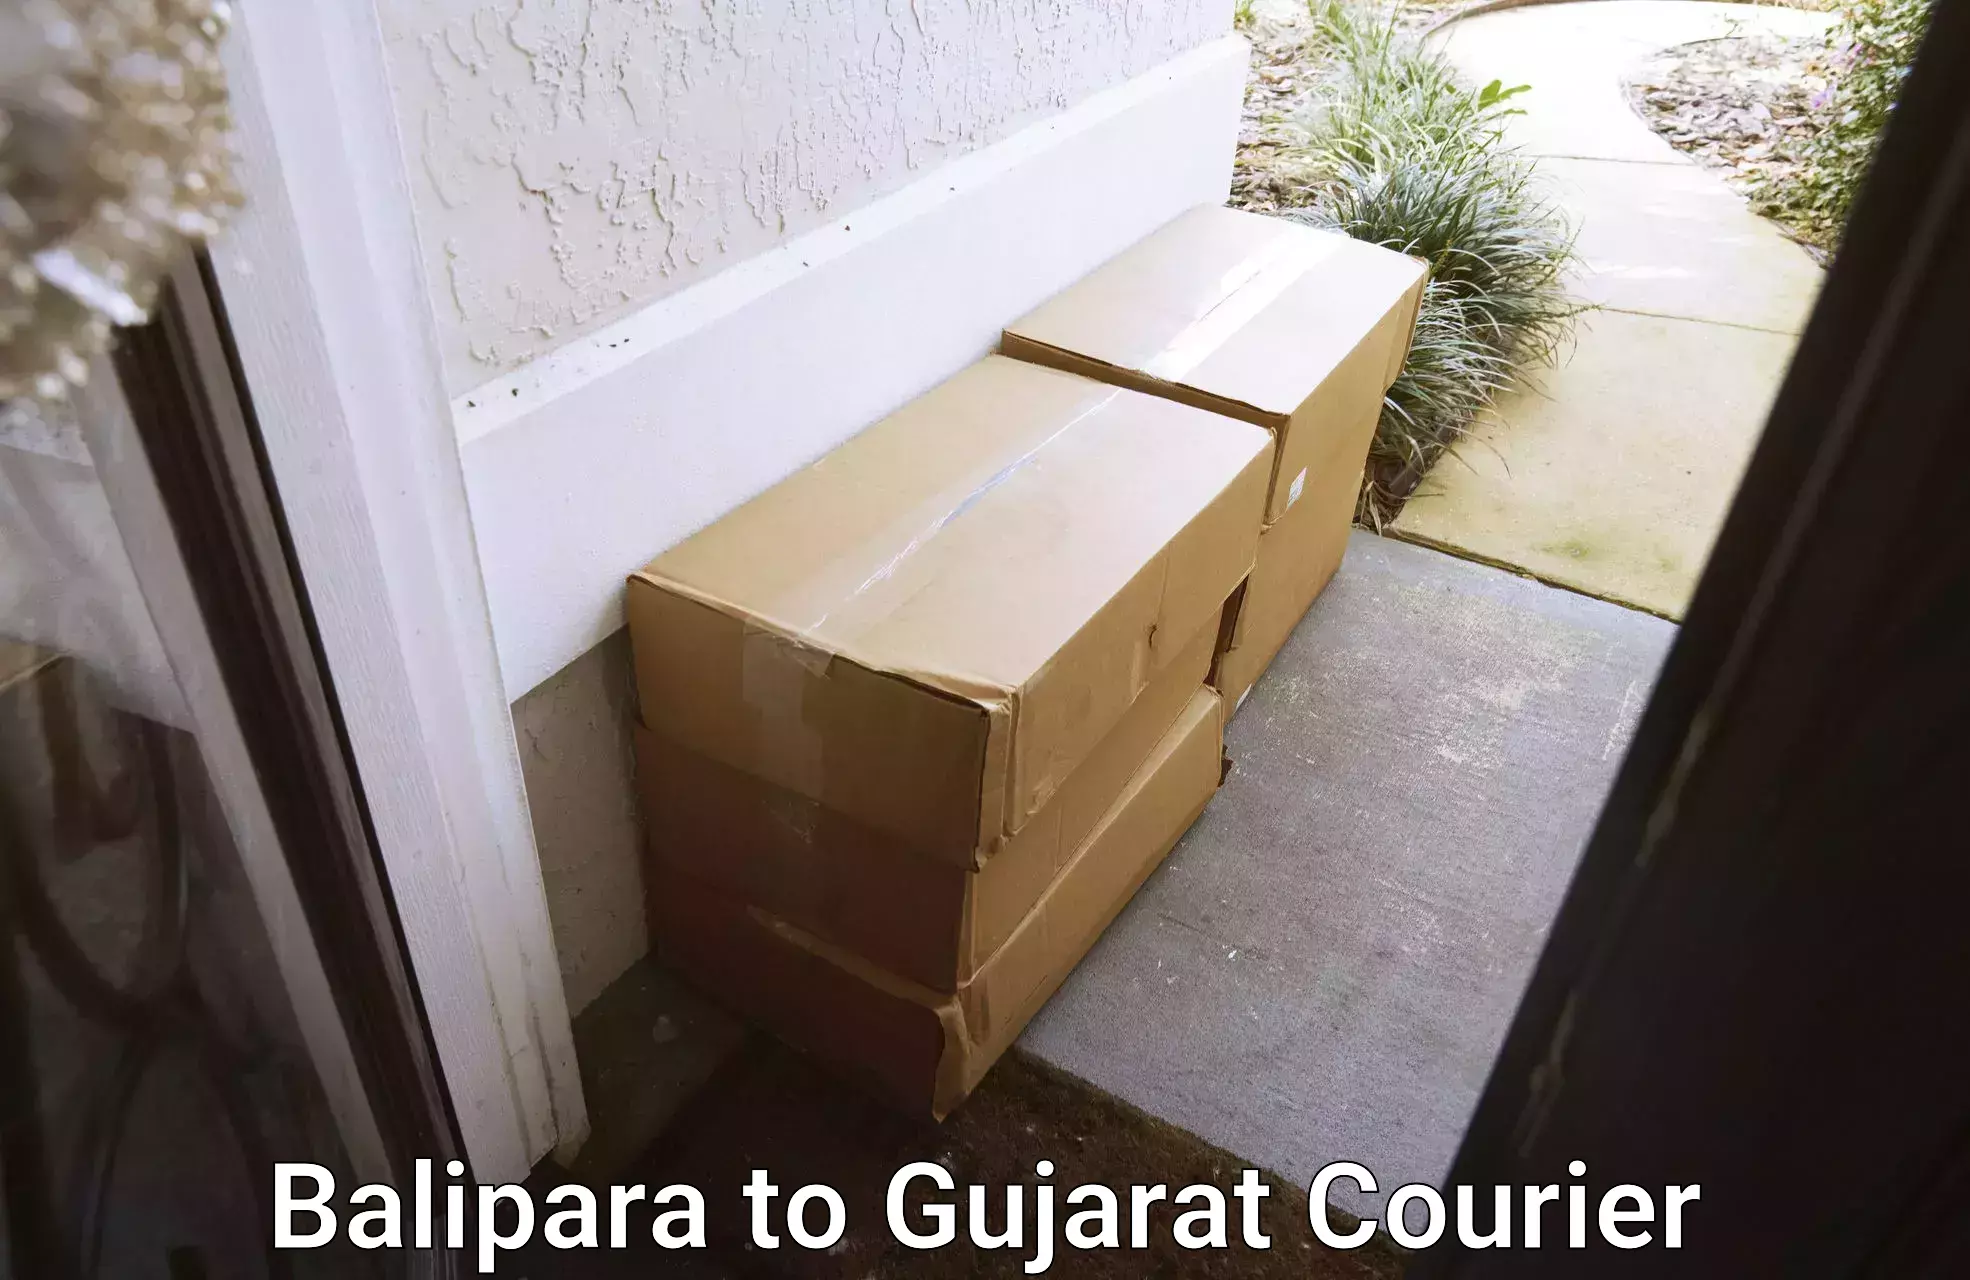 24/7 shipping services Balipara to Gujarat